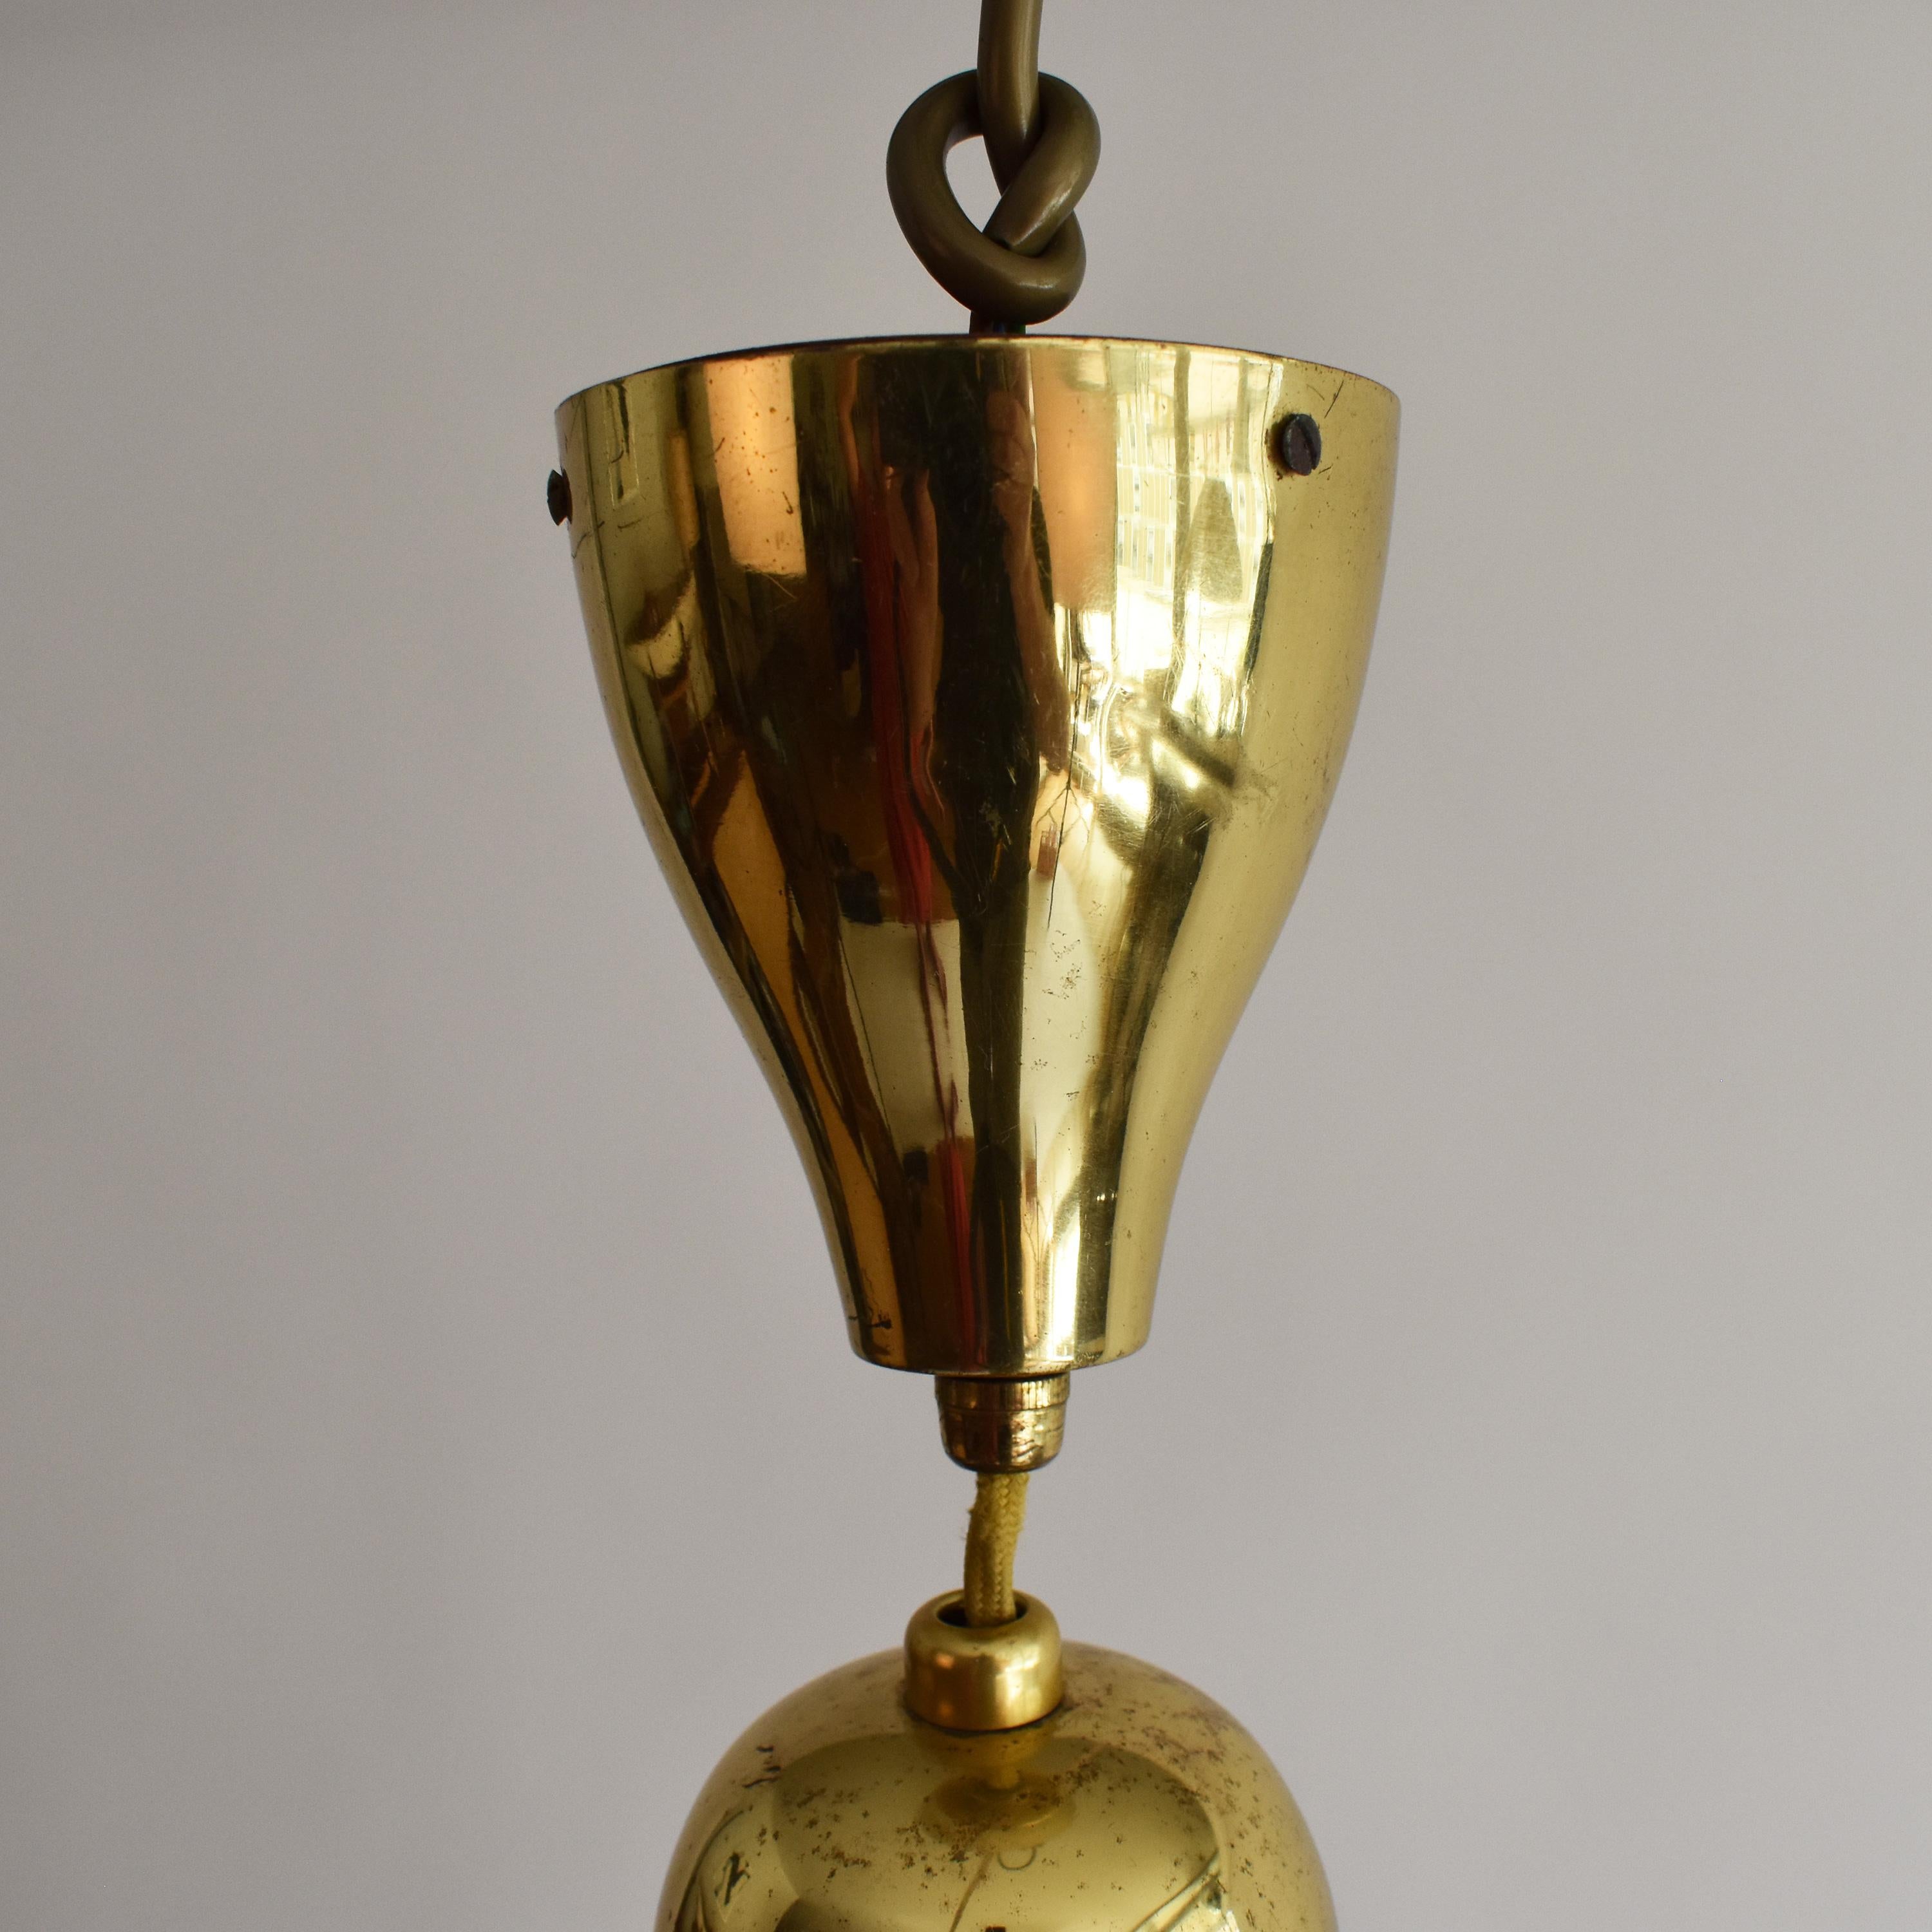 Mid-20th Century Mid-Century Modern Brass Pendant Lamp by Vereinigte Werkstätten 1960s Germany For Sale